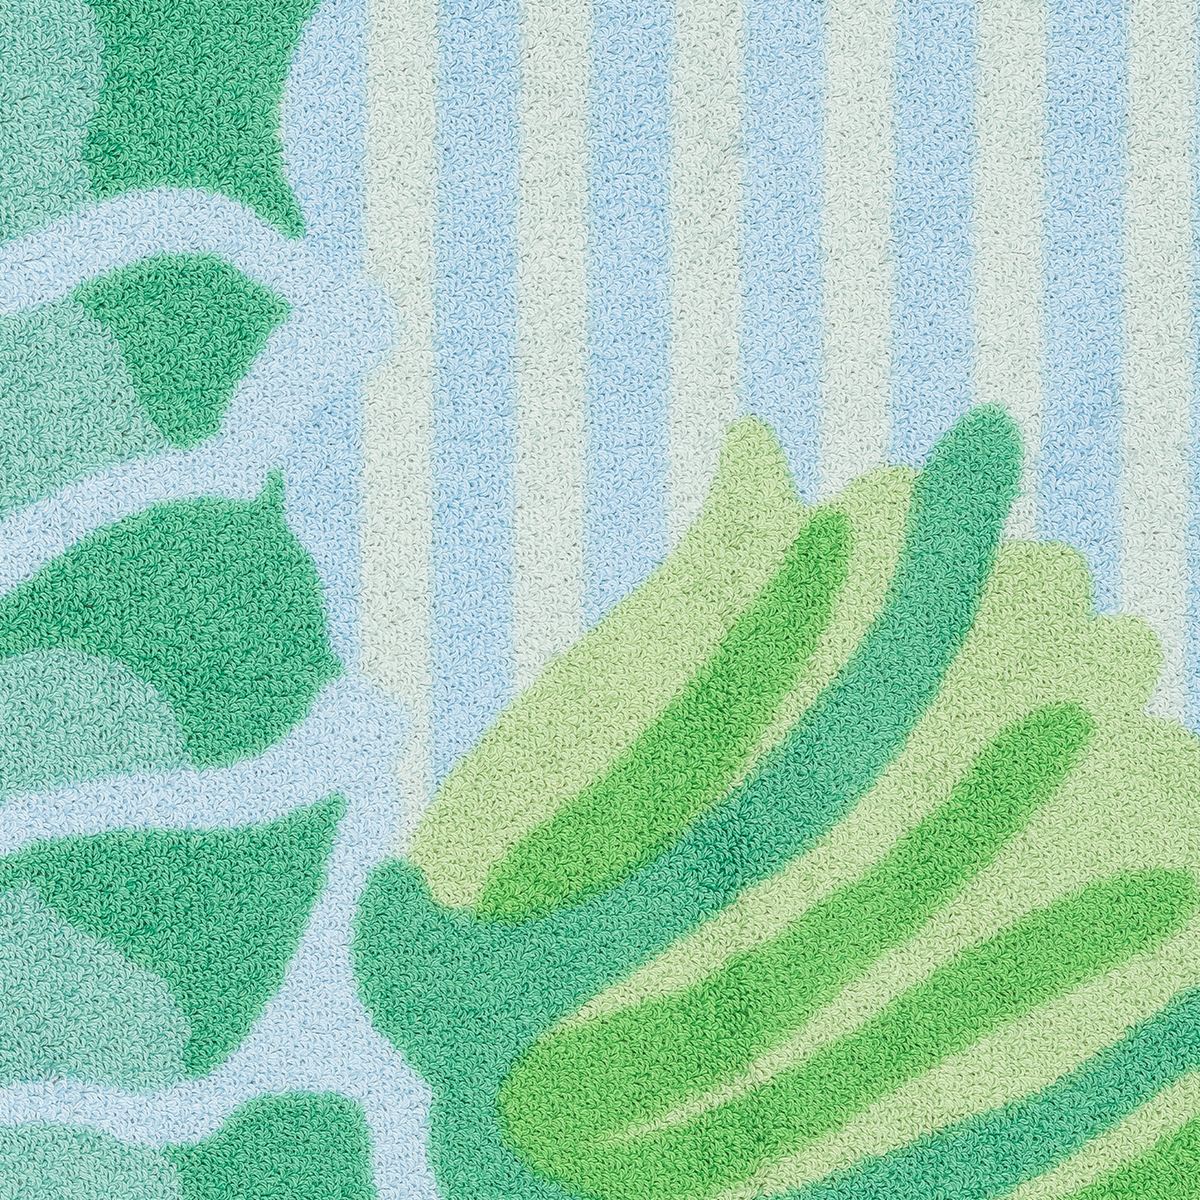 Fabric Sample of Matouk Schumacher Seahorse Beach Towels in Aquamarine Color